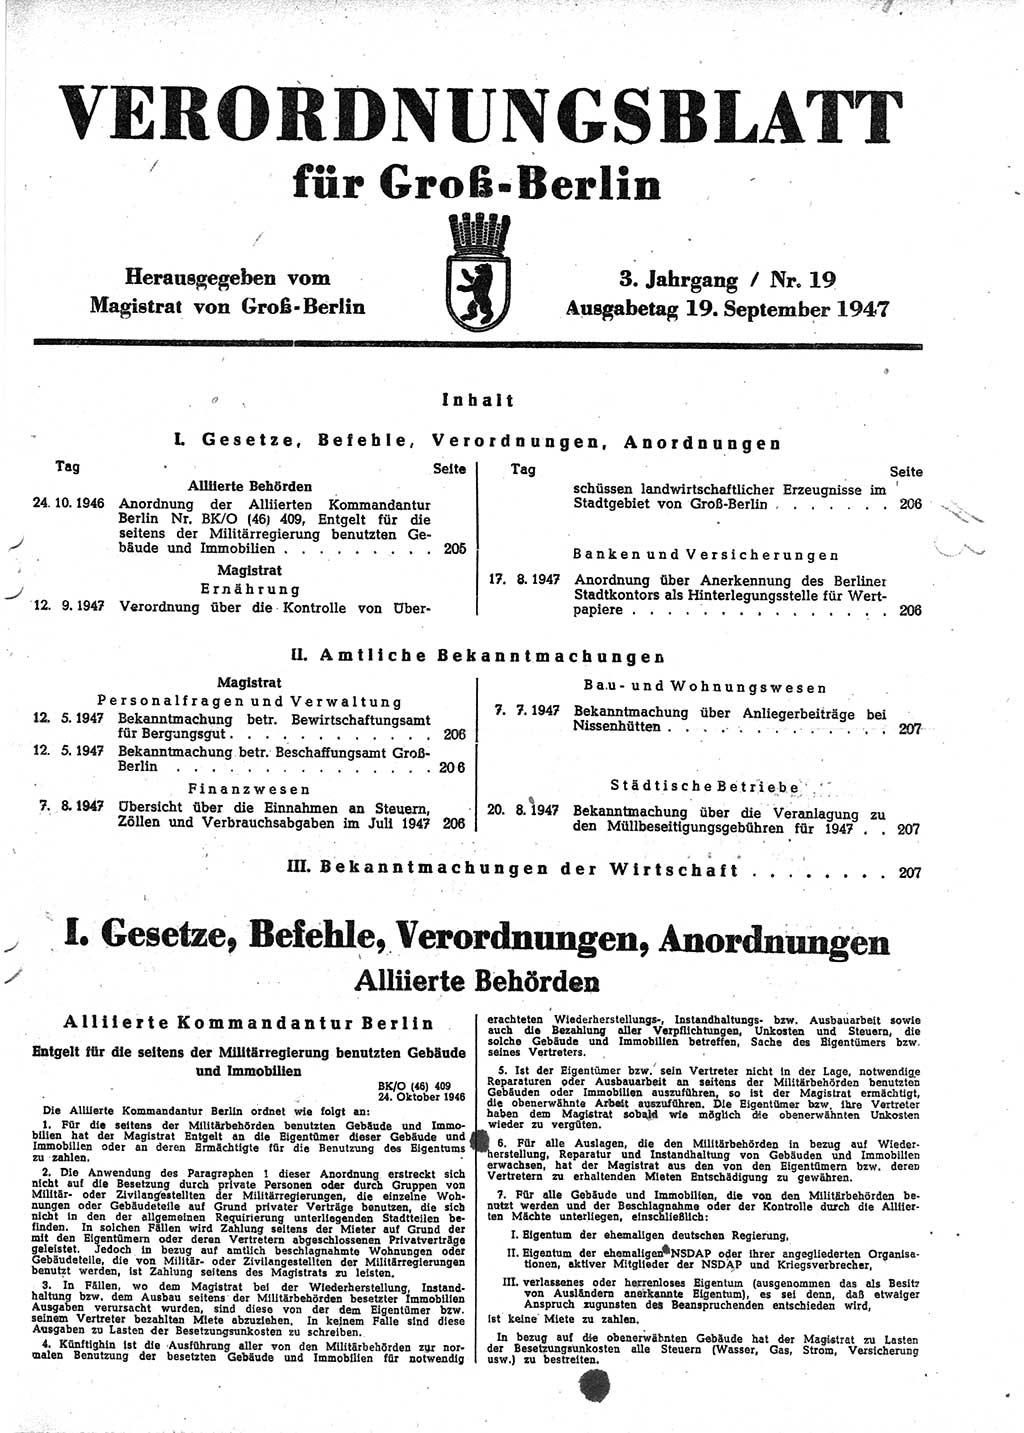 Verordnungsblatt (VOBl.) für Groß-Berlin 1947, Seite 205 (VOBl. Bln. 1947, S. 205)